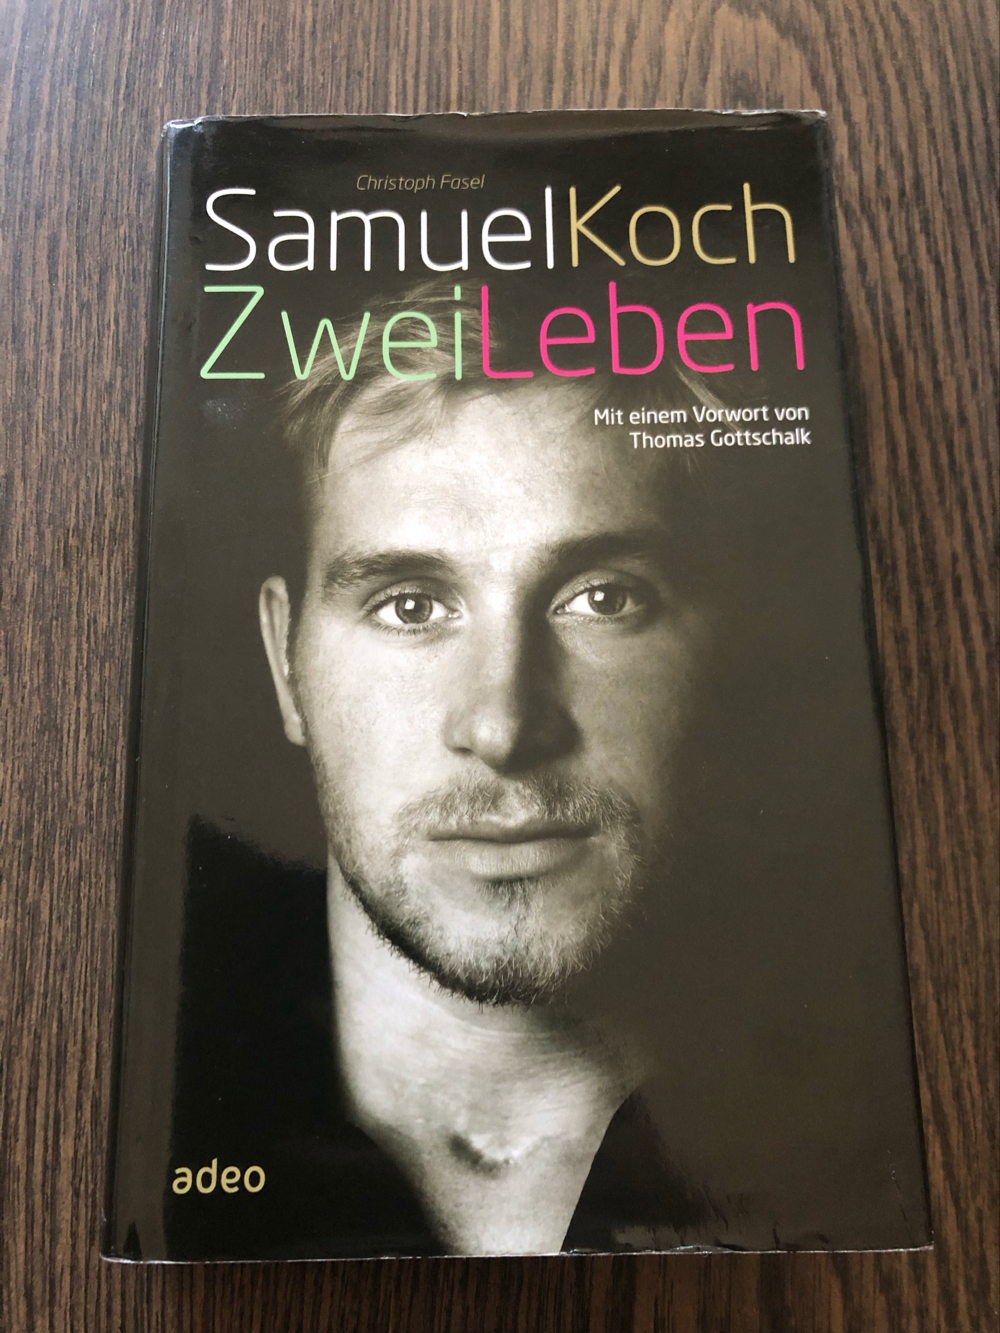 Zwei Leben, Samuel Koch